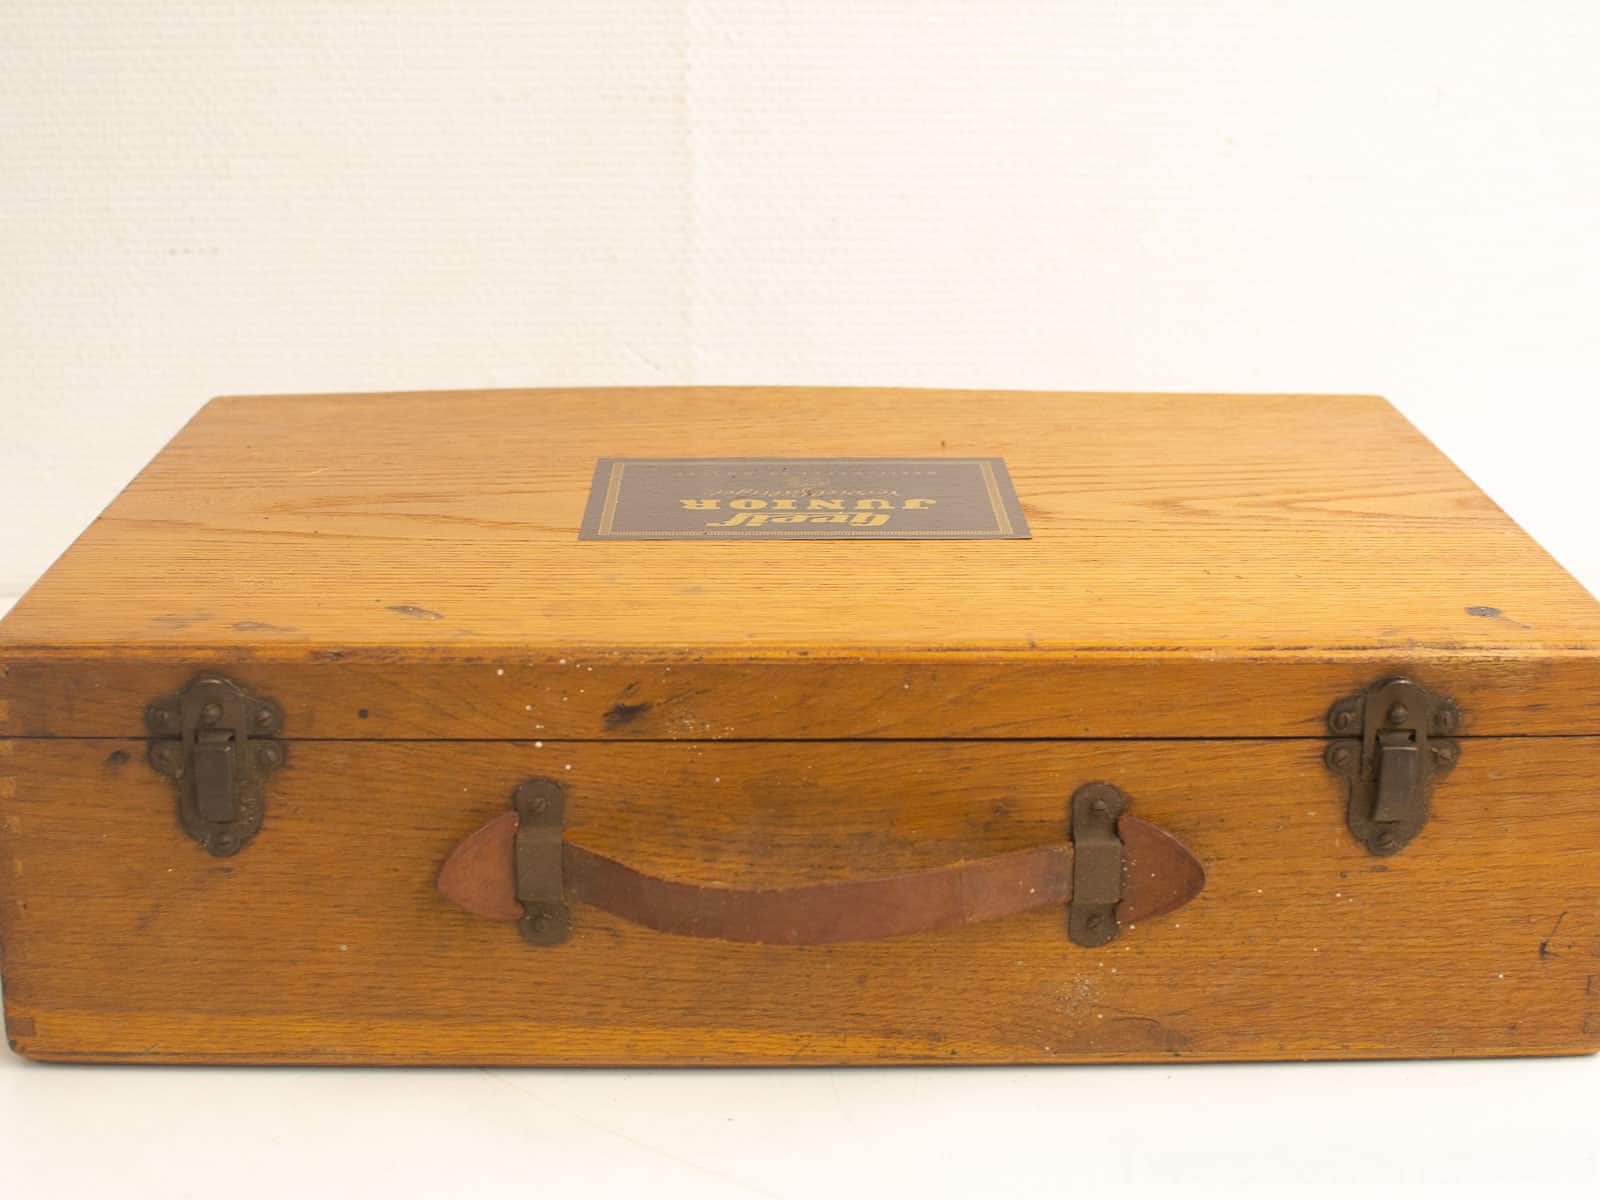 Creif junior vervielfaltiger in houten koffer 23394